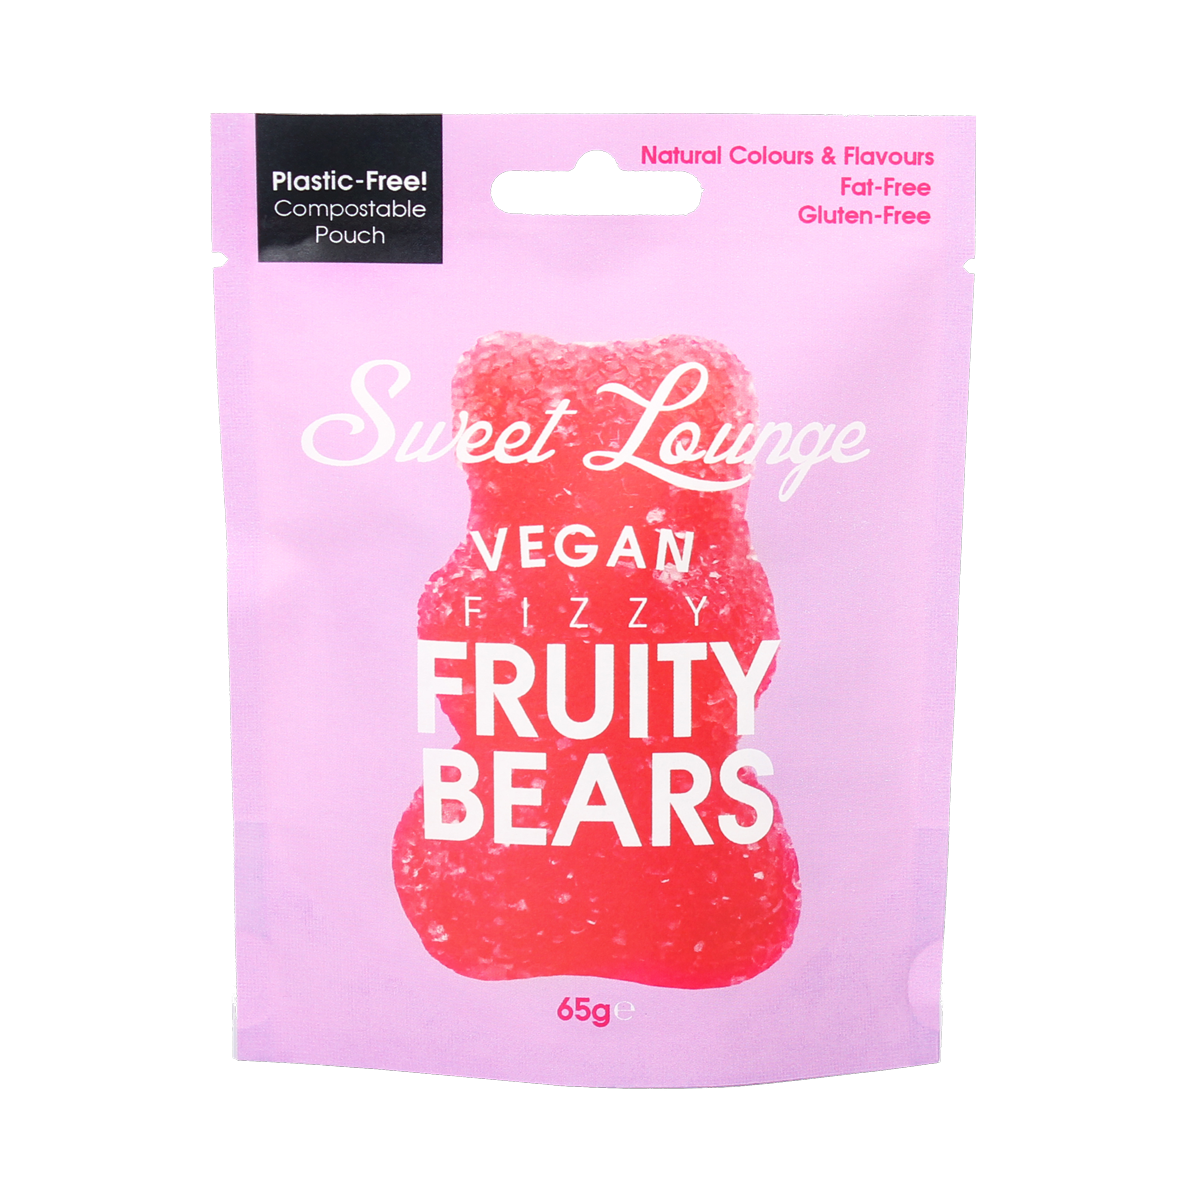 Sweet Lounge Fizzy Fruity Bears (65g)